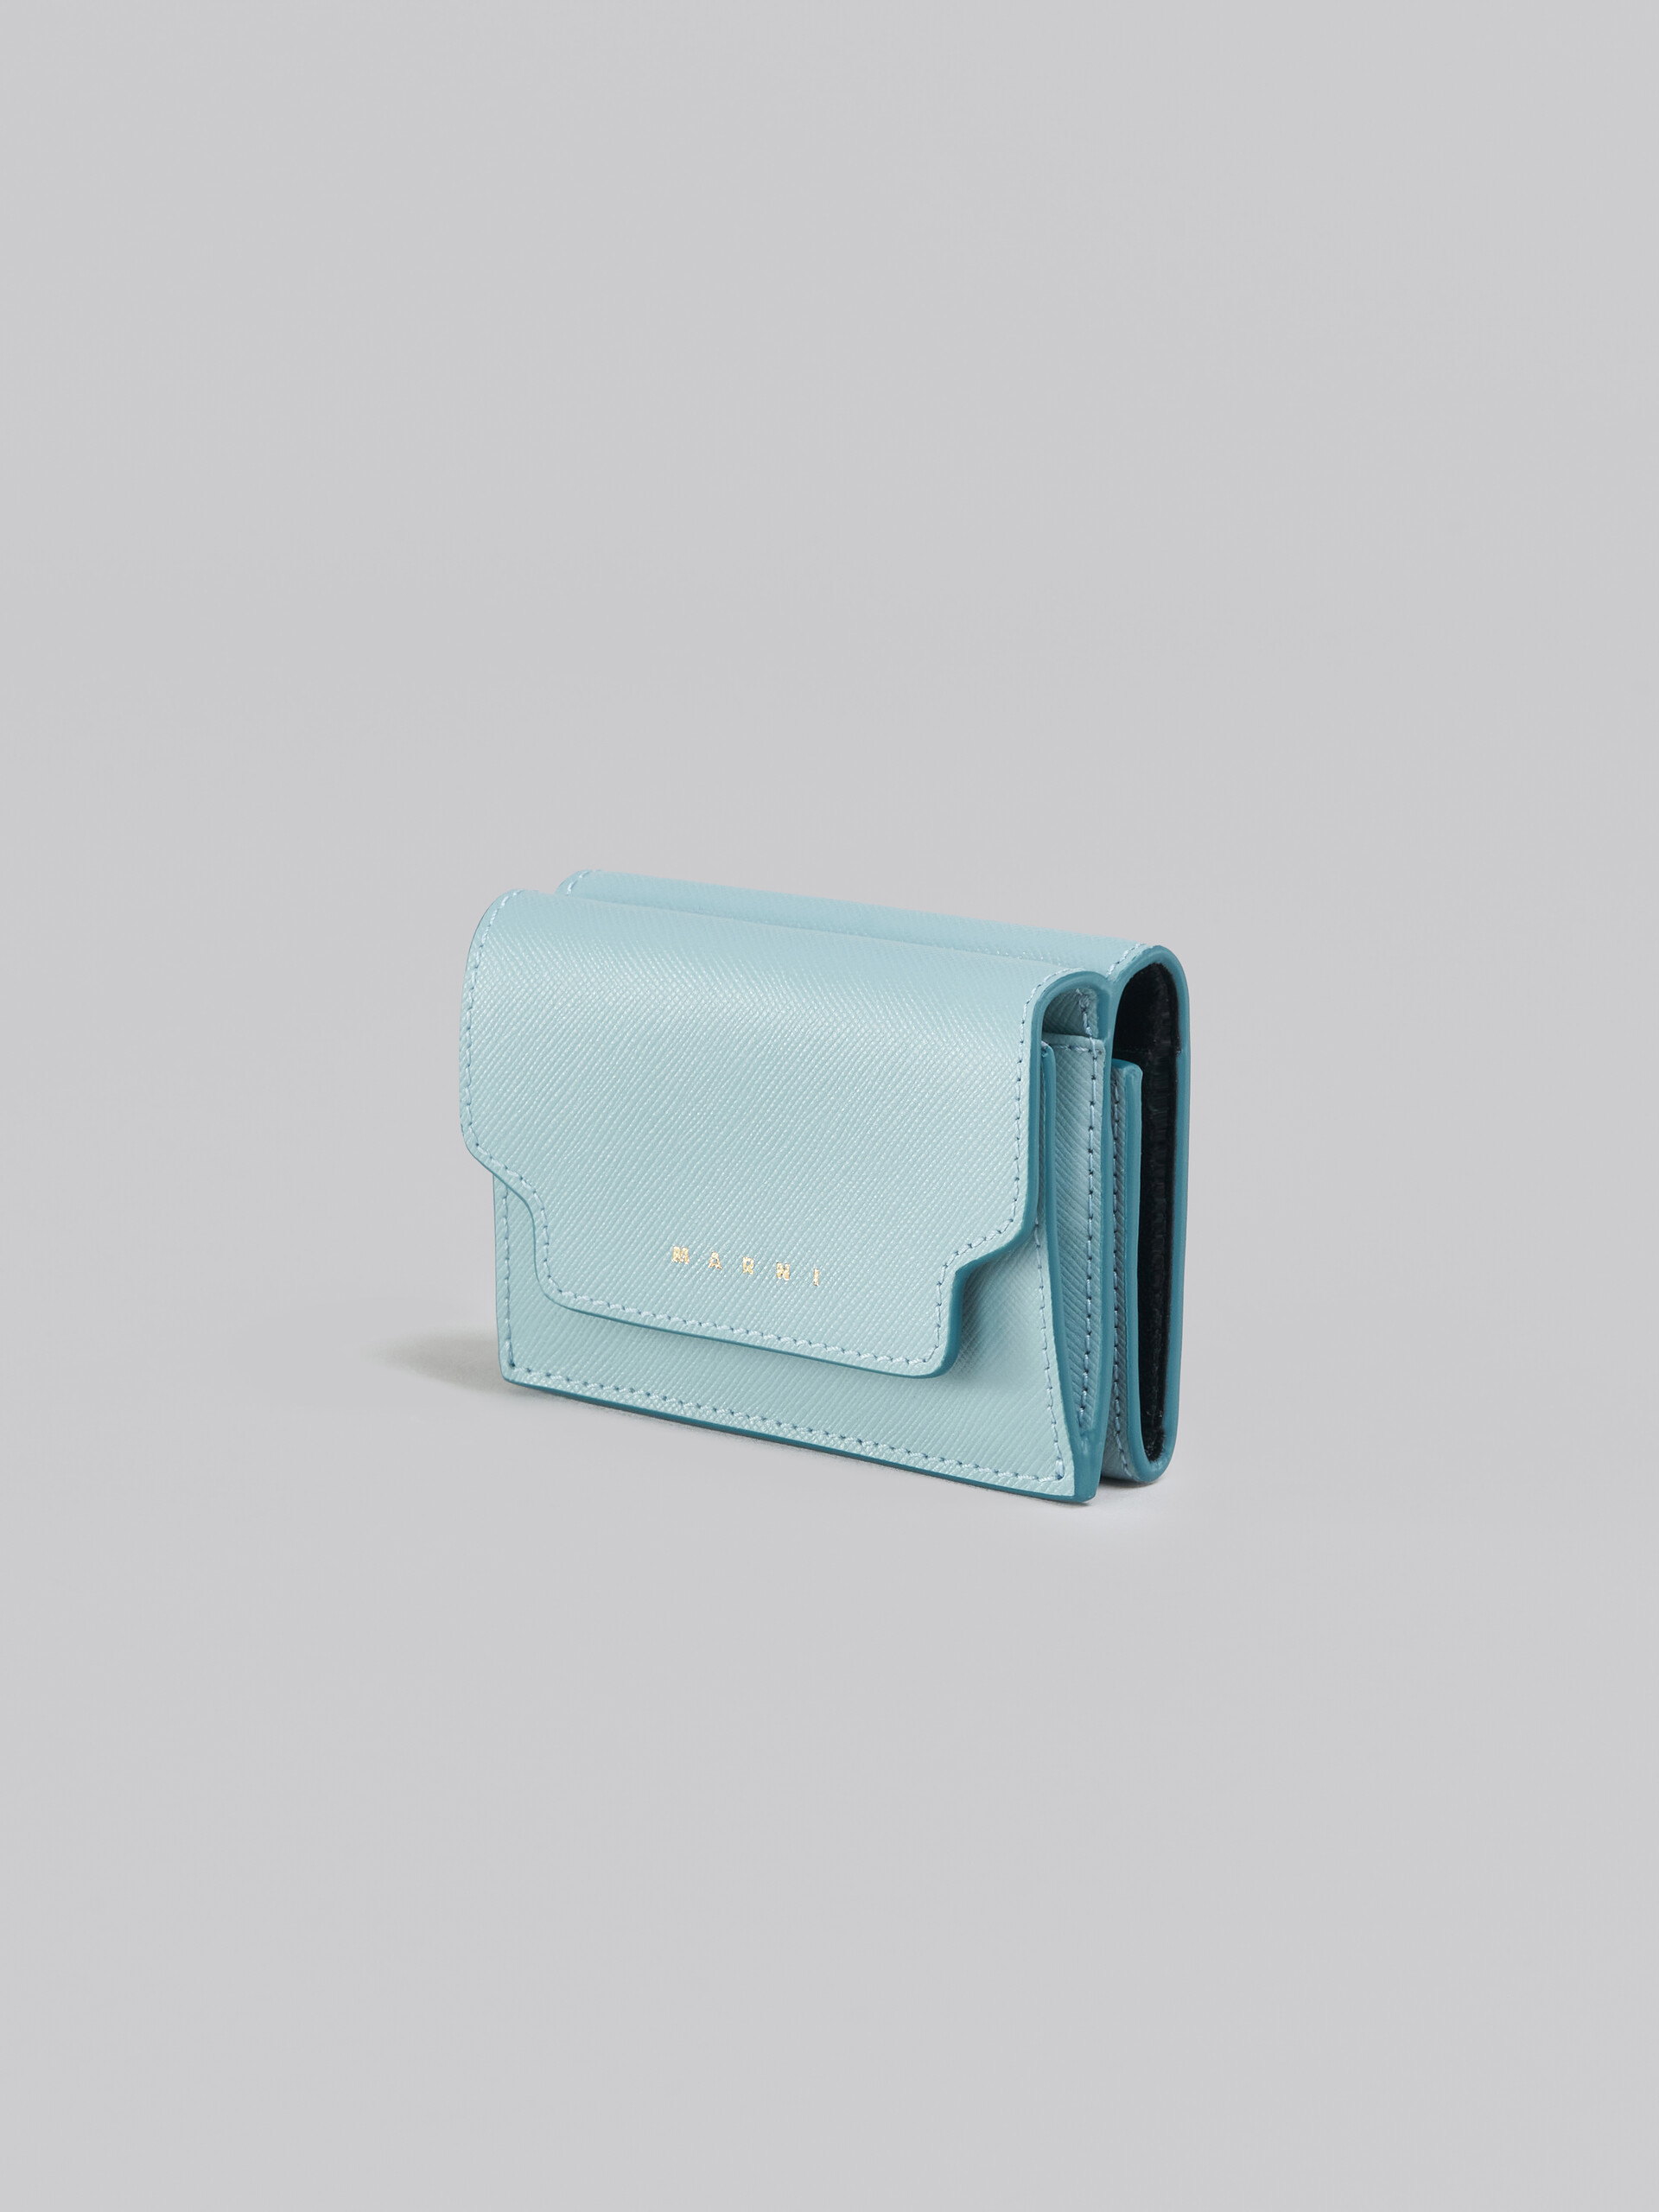 Wallets & purses Marni - Saffiano leather tri-fold wallet -  PFMOW02U07LV520Z360N